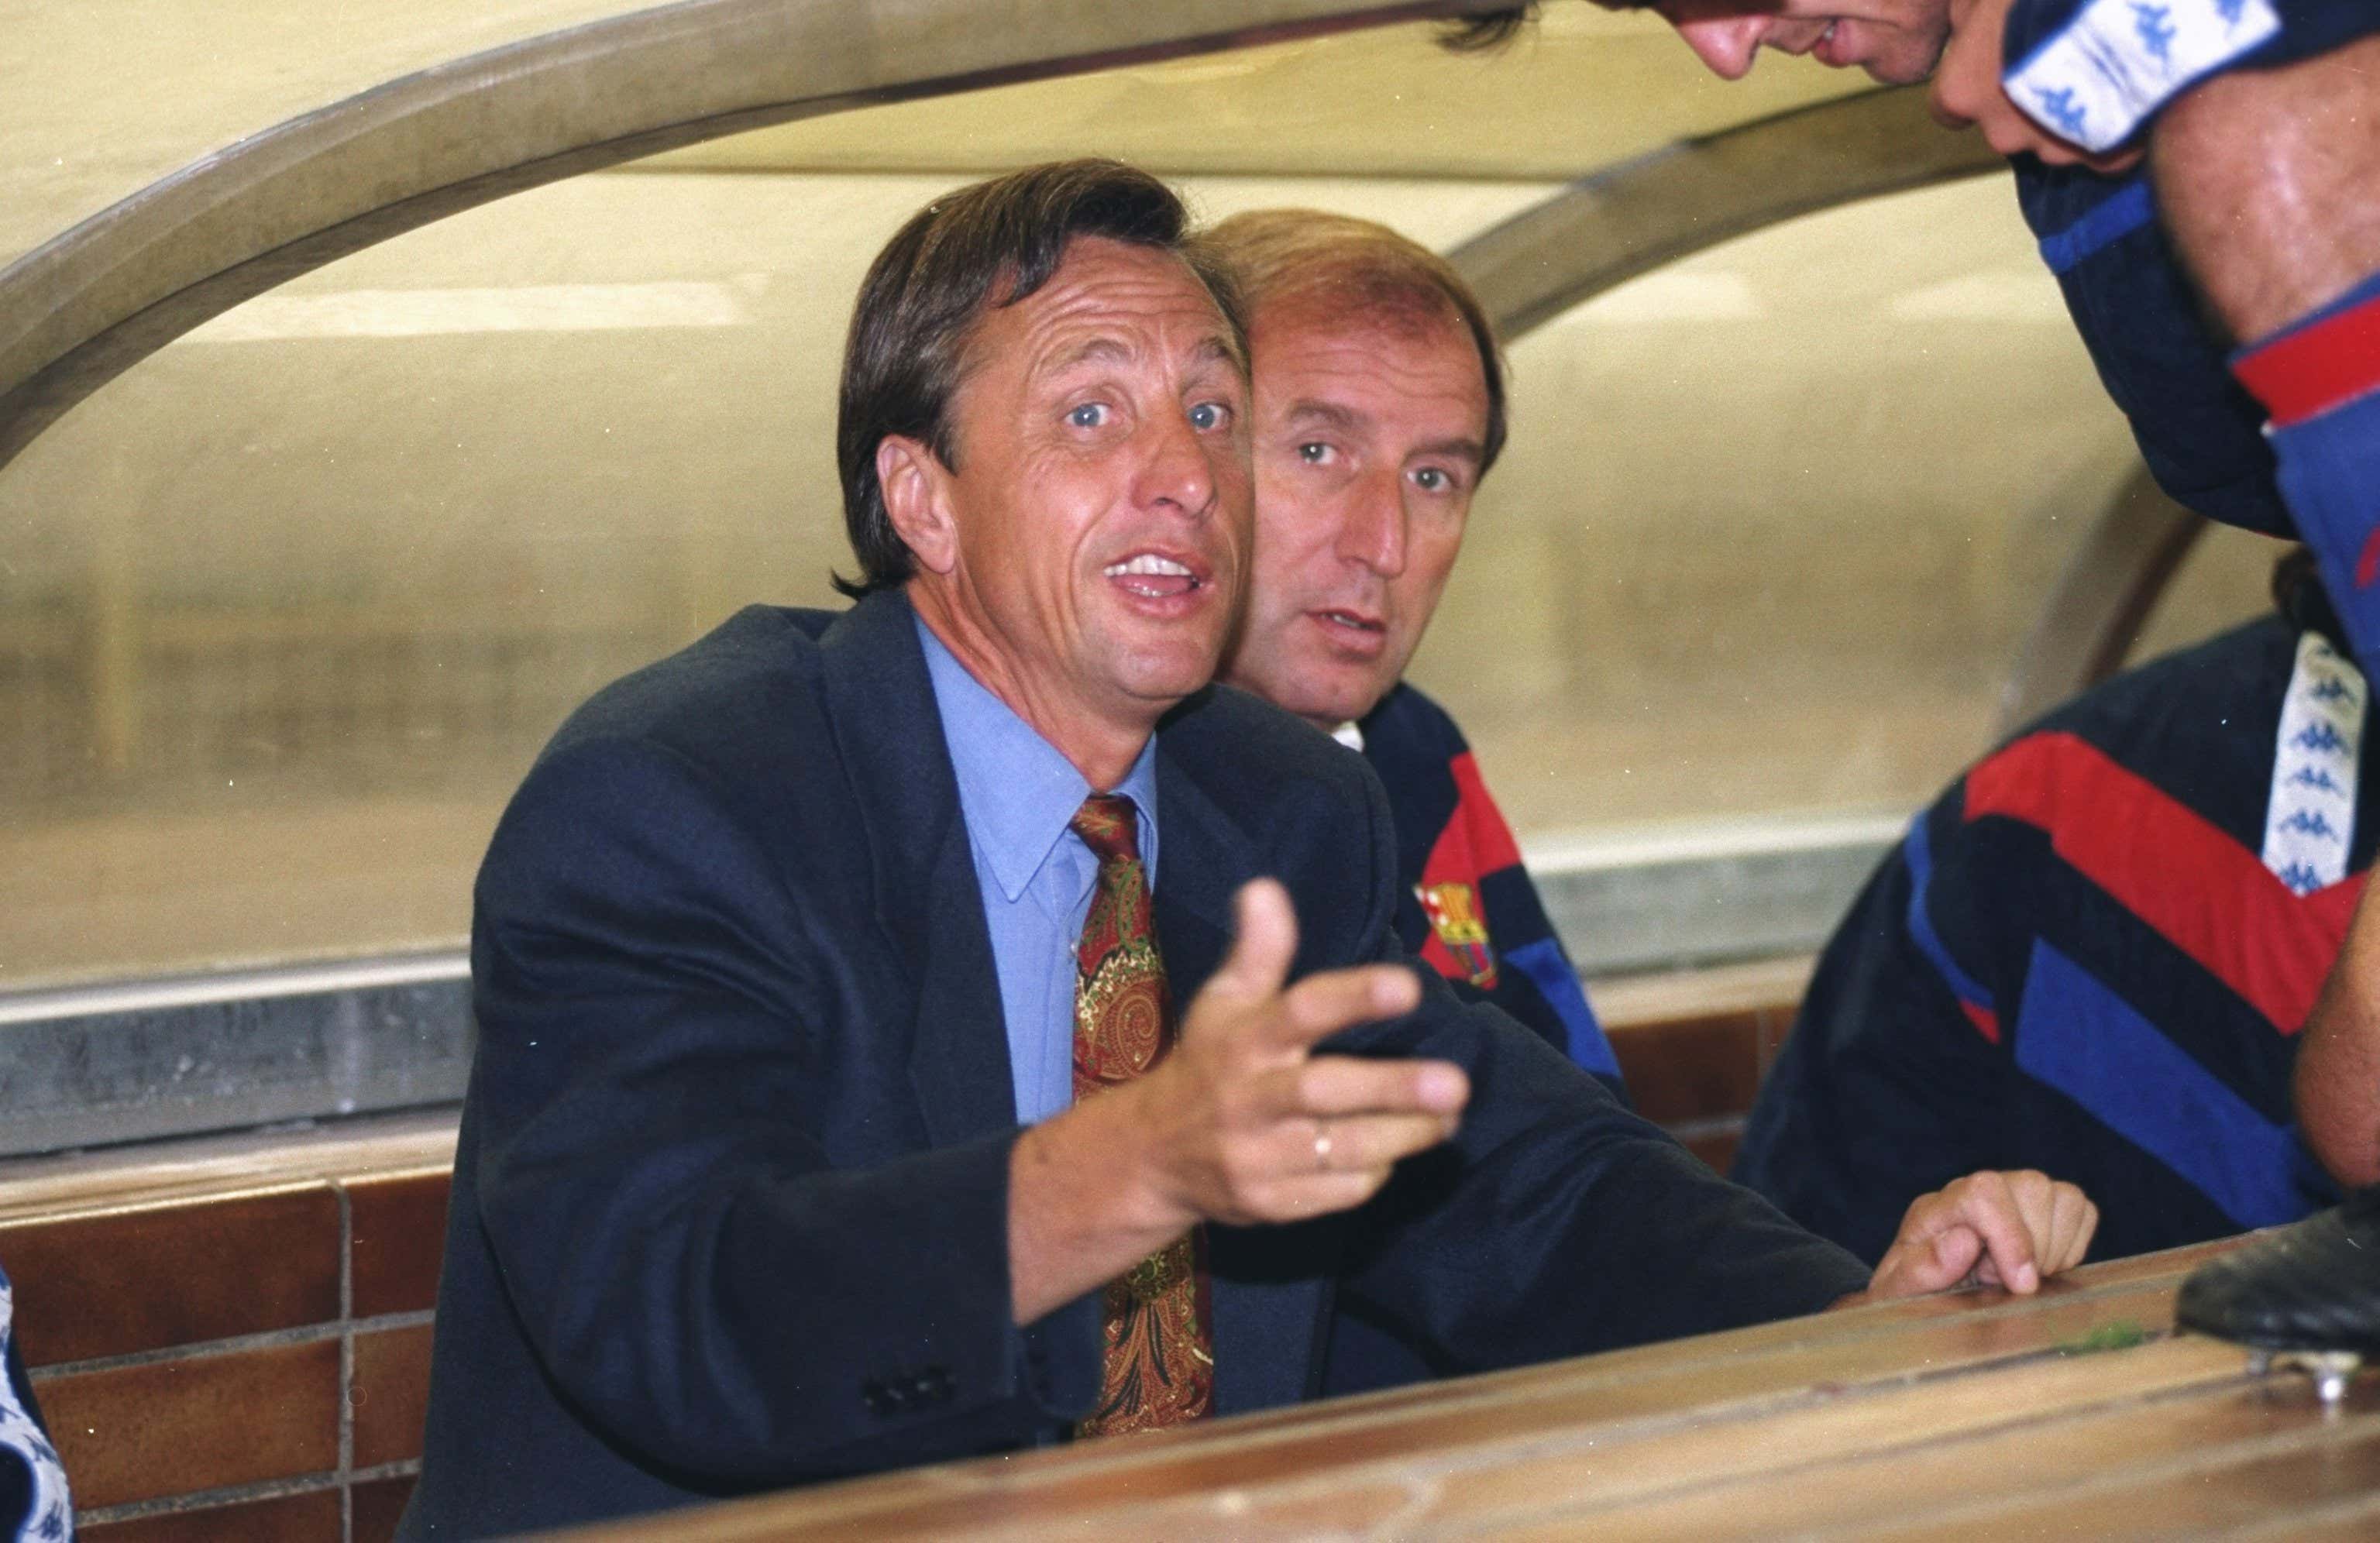 Johan Cruyff Barcelona